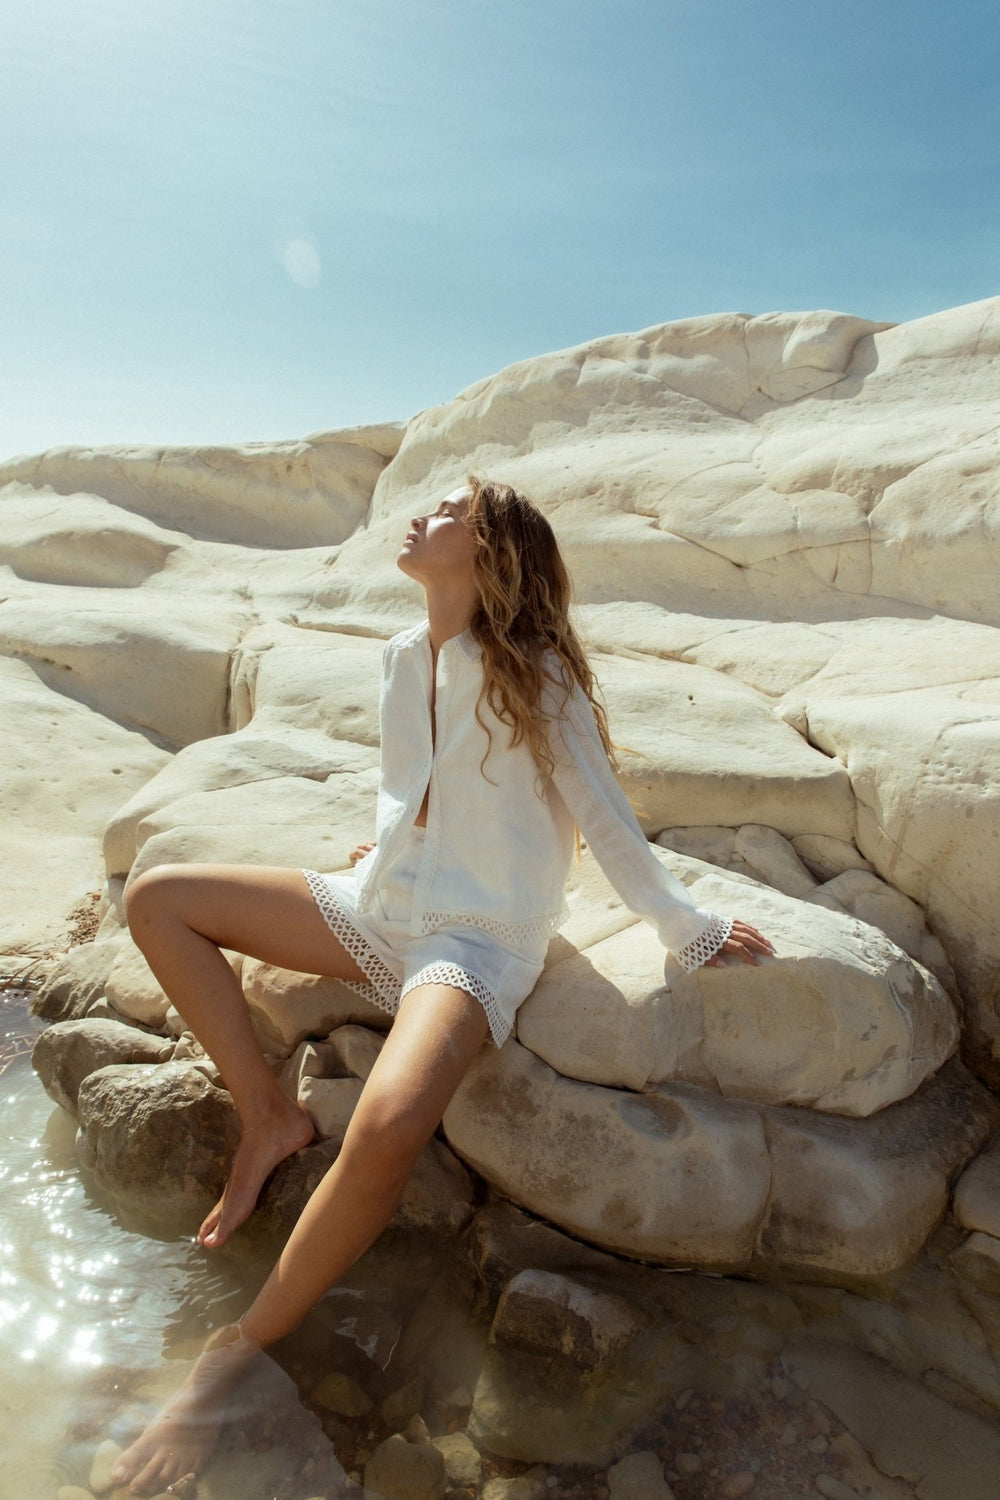 Agathia Shirt White | Skjorter og bluser | Smuk - Dameklær på nett